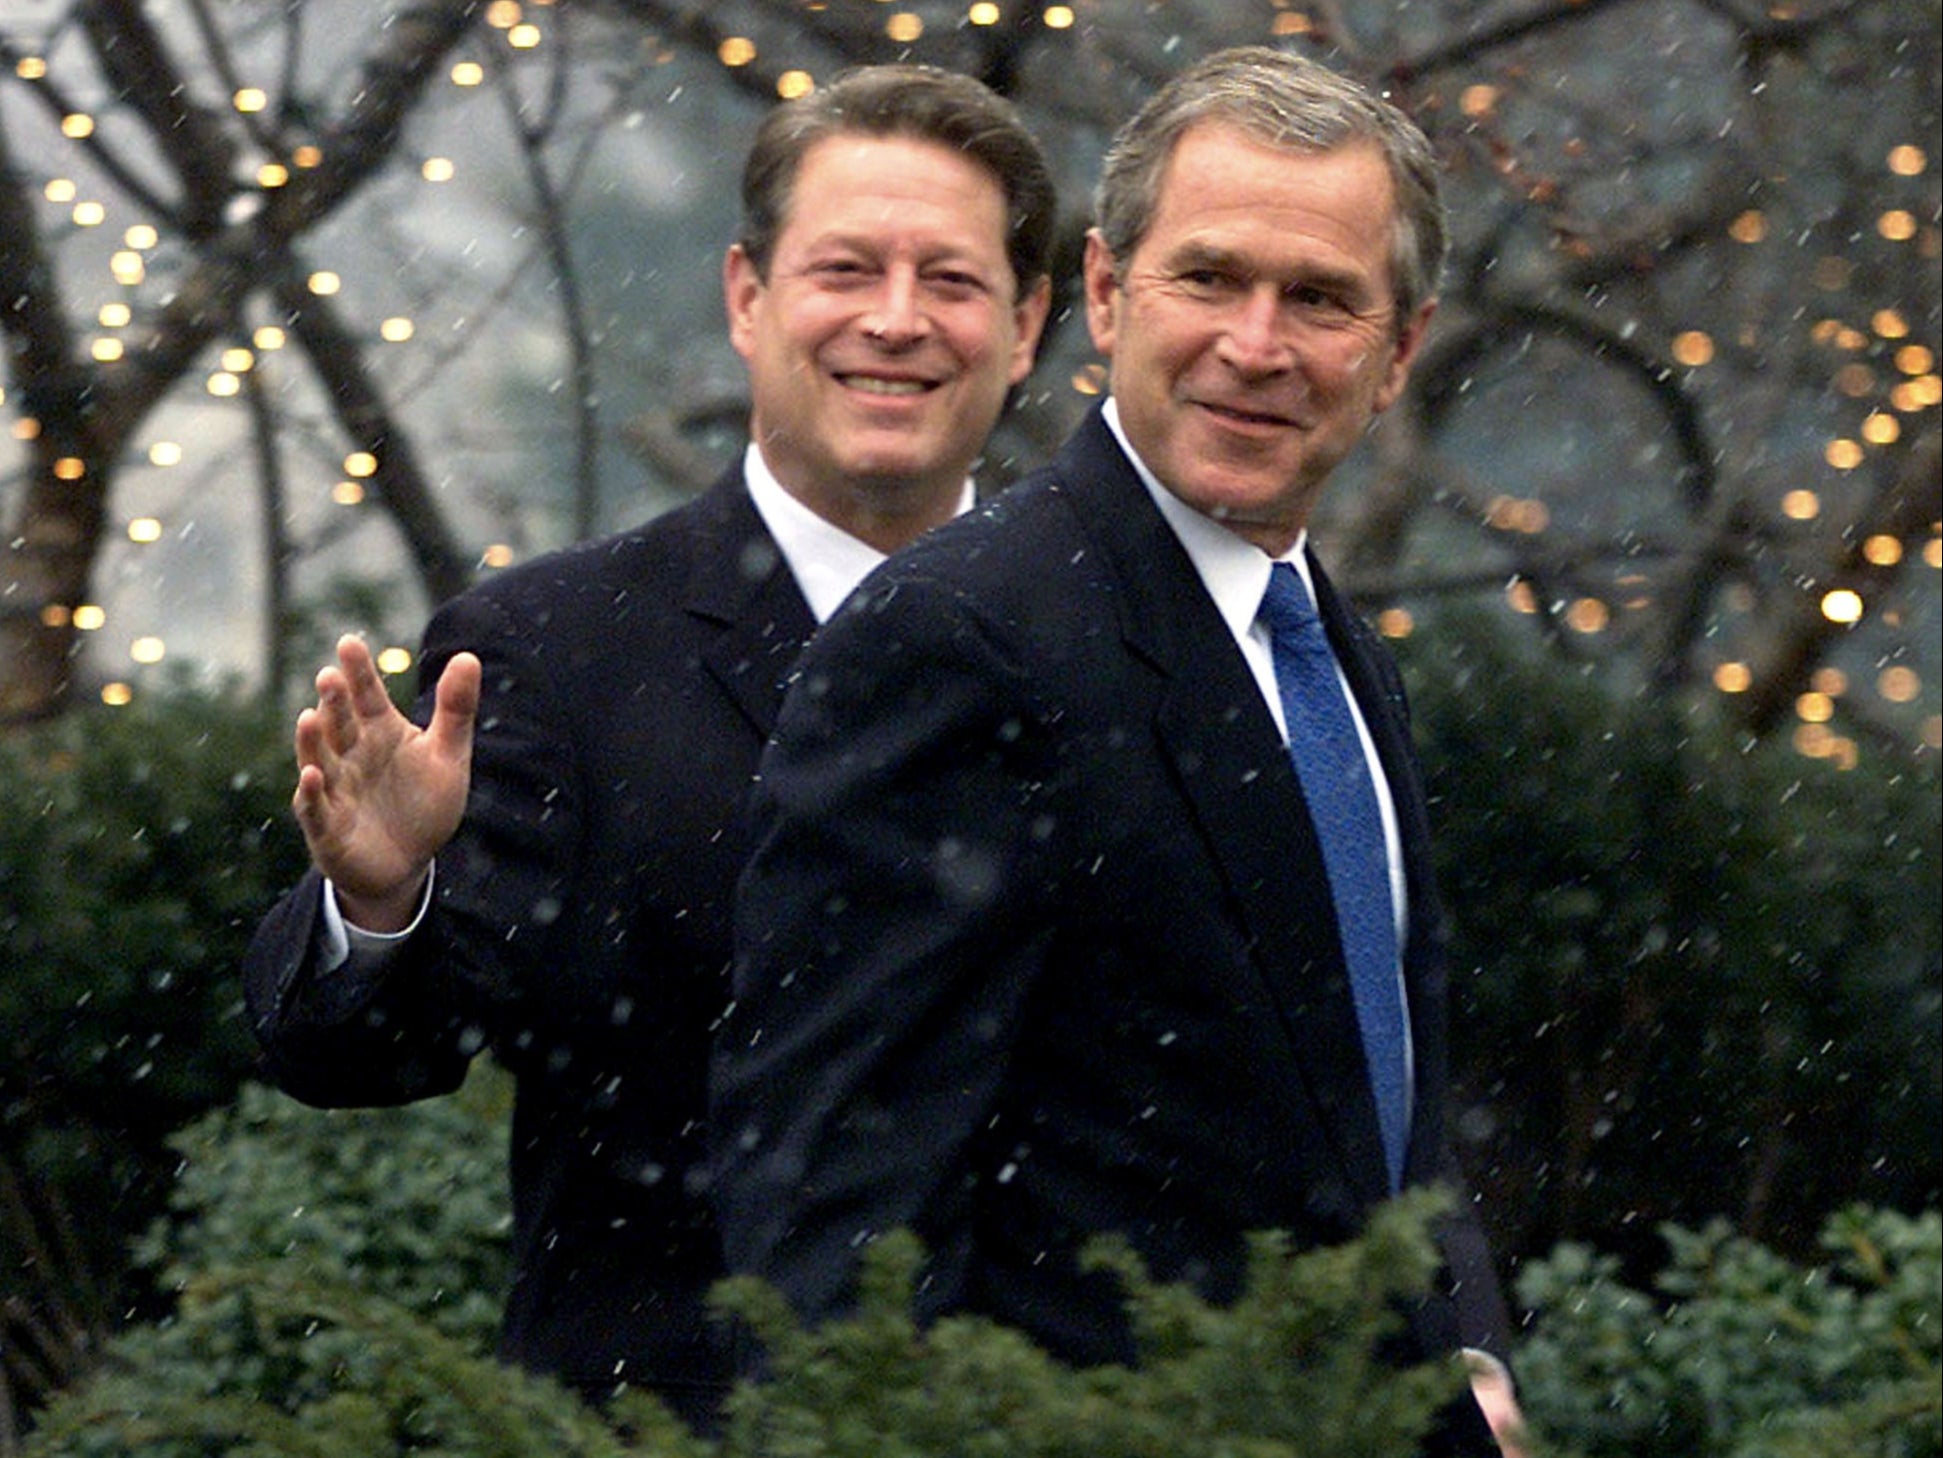 Al Gore and George W Bush, December 2000